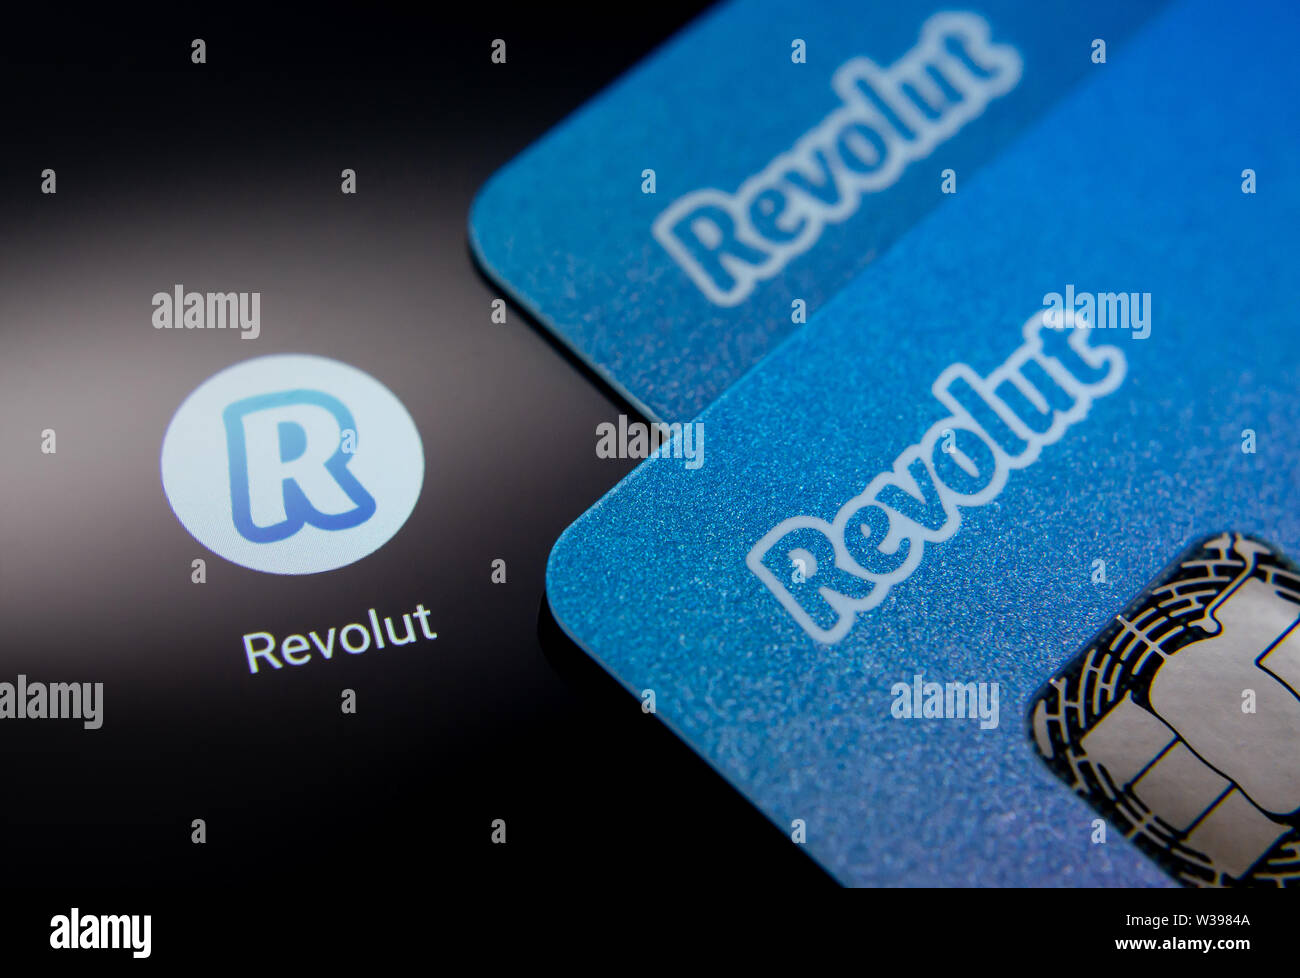 Revolut bank Karte auf dem Bildschirm des Smartphones Symbol weiter App. Revolut Ltd. ist eine britische Financial Technology Company, Banking Services bietet. Stockfoto